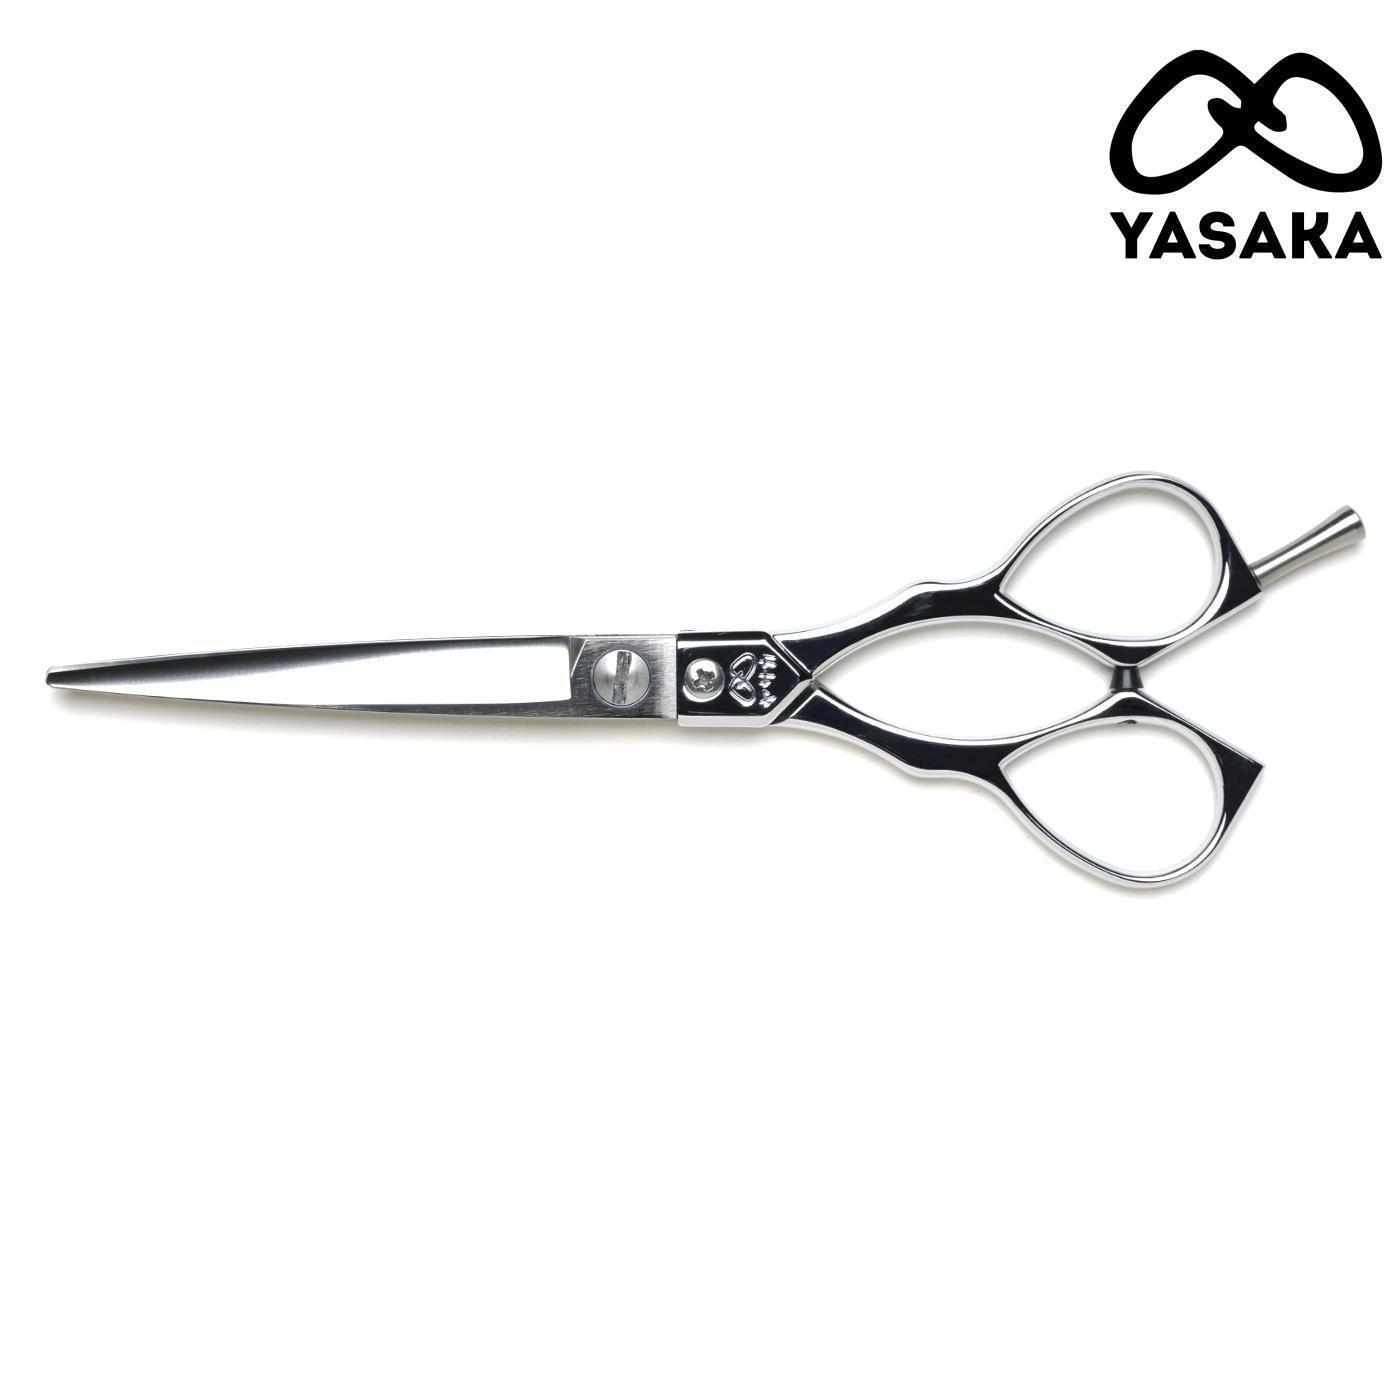 Yasaka L-65 Scissors